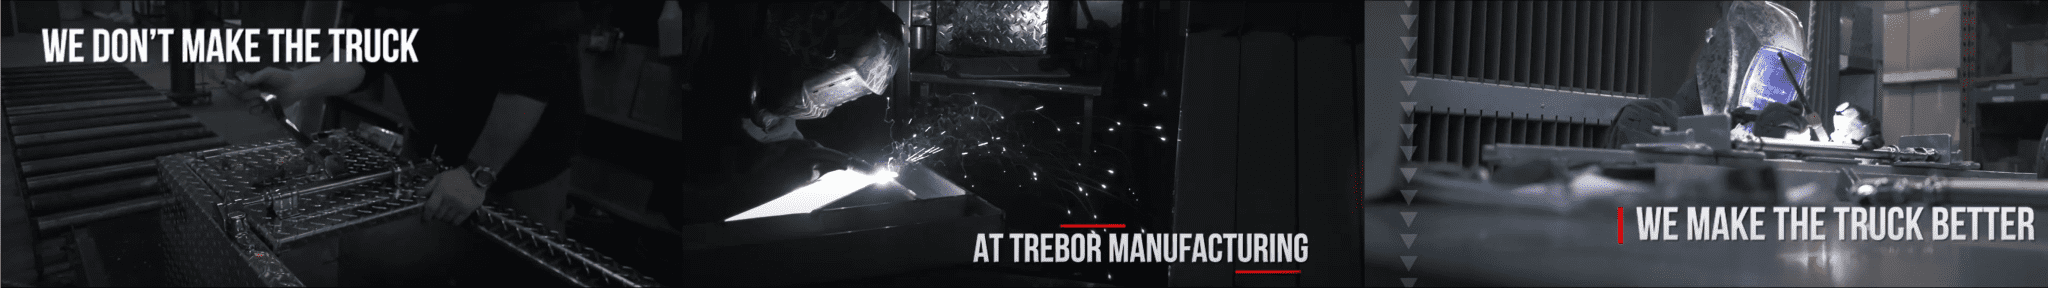 Trebor Manufacturing - Banner Slide